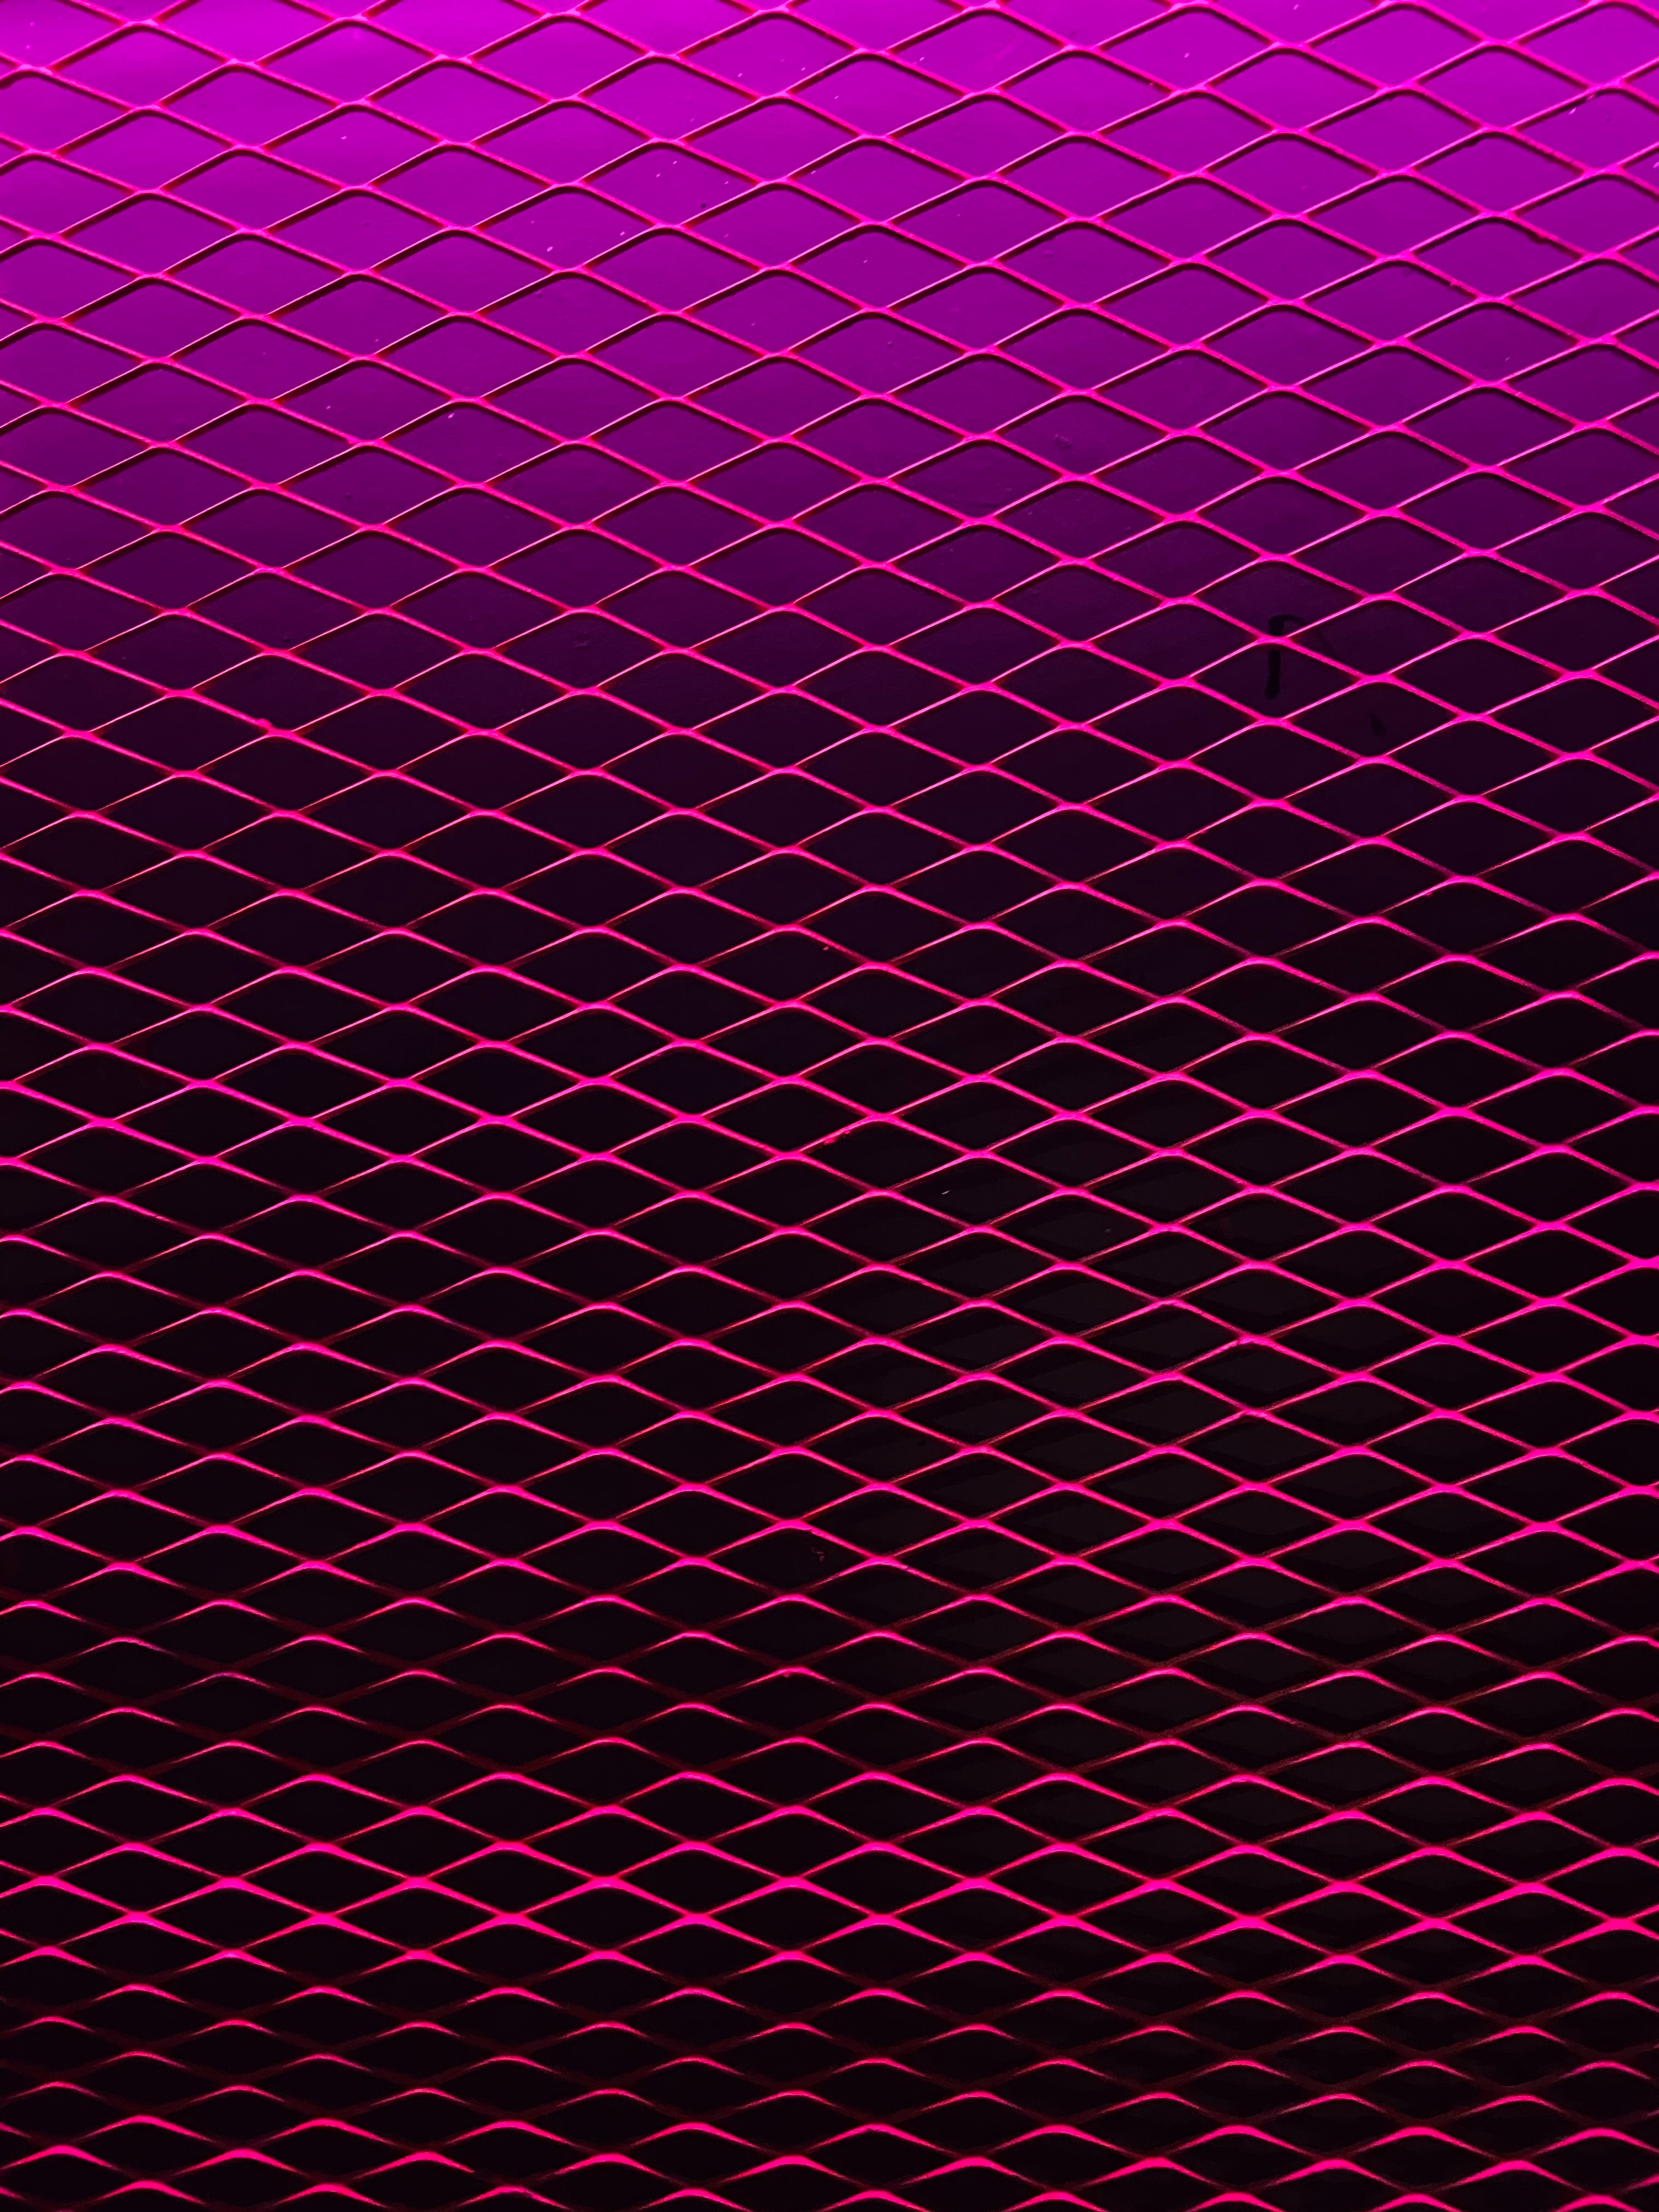 Pink cellphone Wallpaper